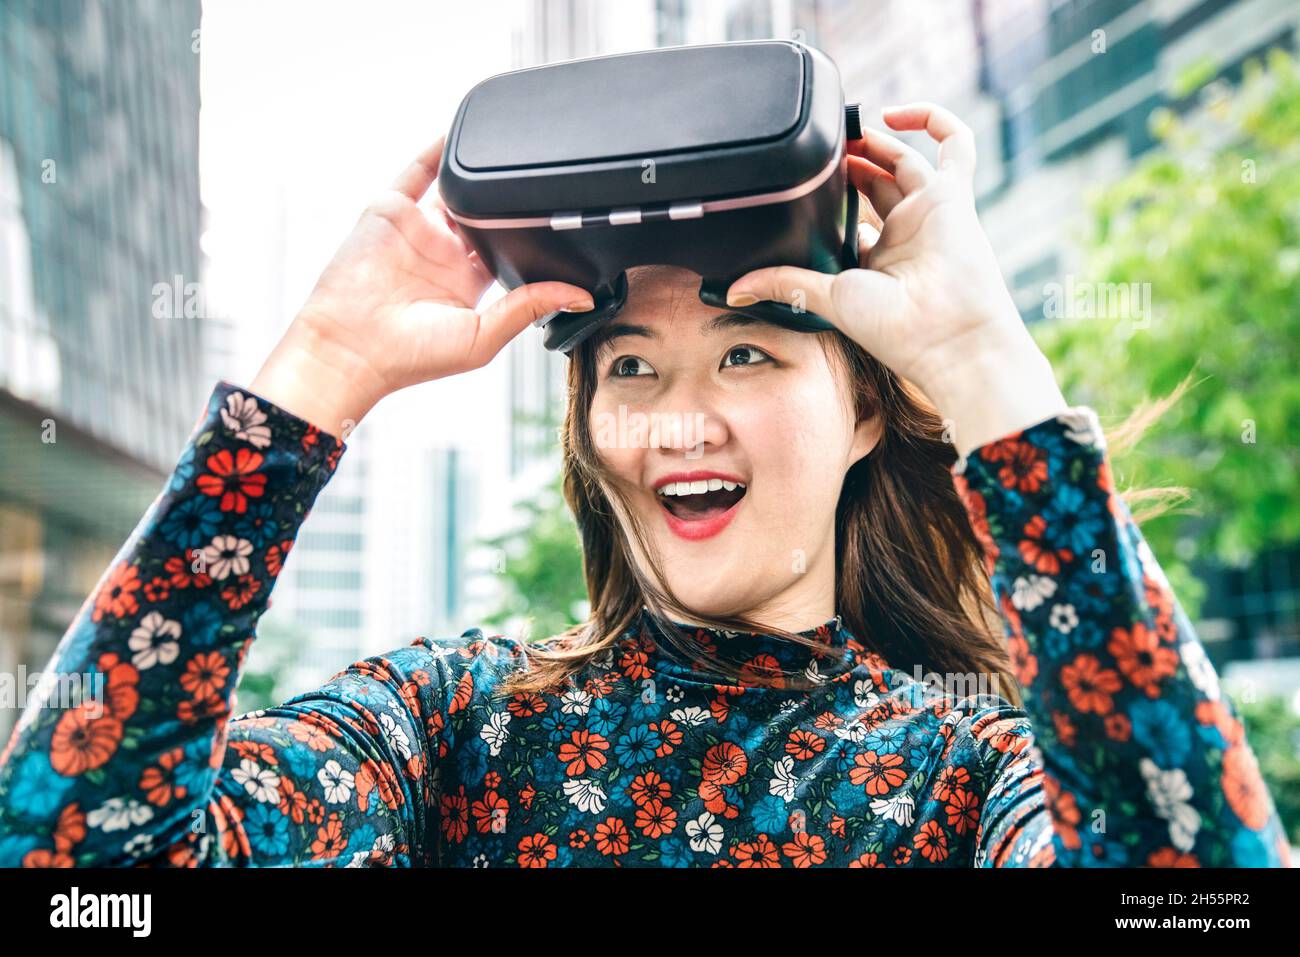 Jeune femme surprise après l'expérience des lunettes vr - réalité virtuelle et concept de technologie wearable avec fille s'amusant avec le casque masque de lunettes Banque D'Images